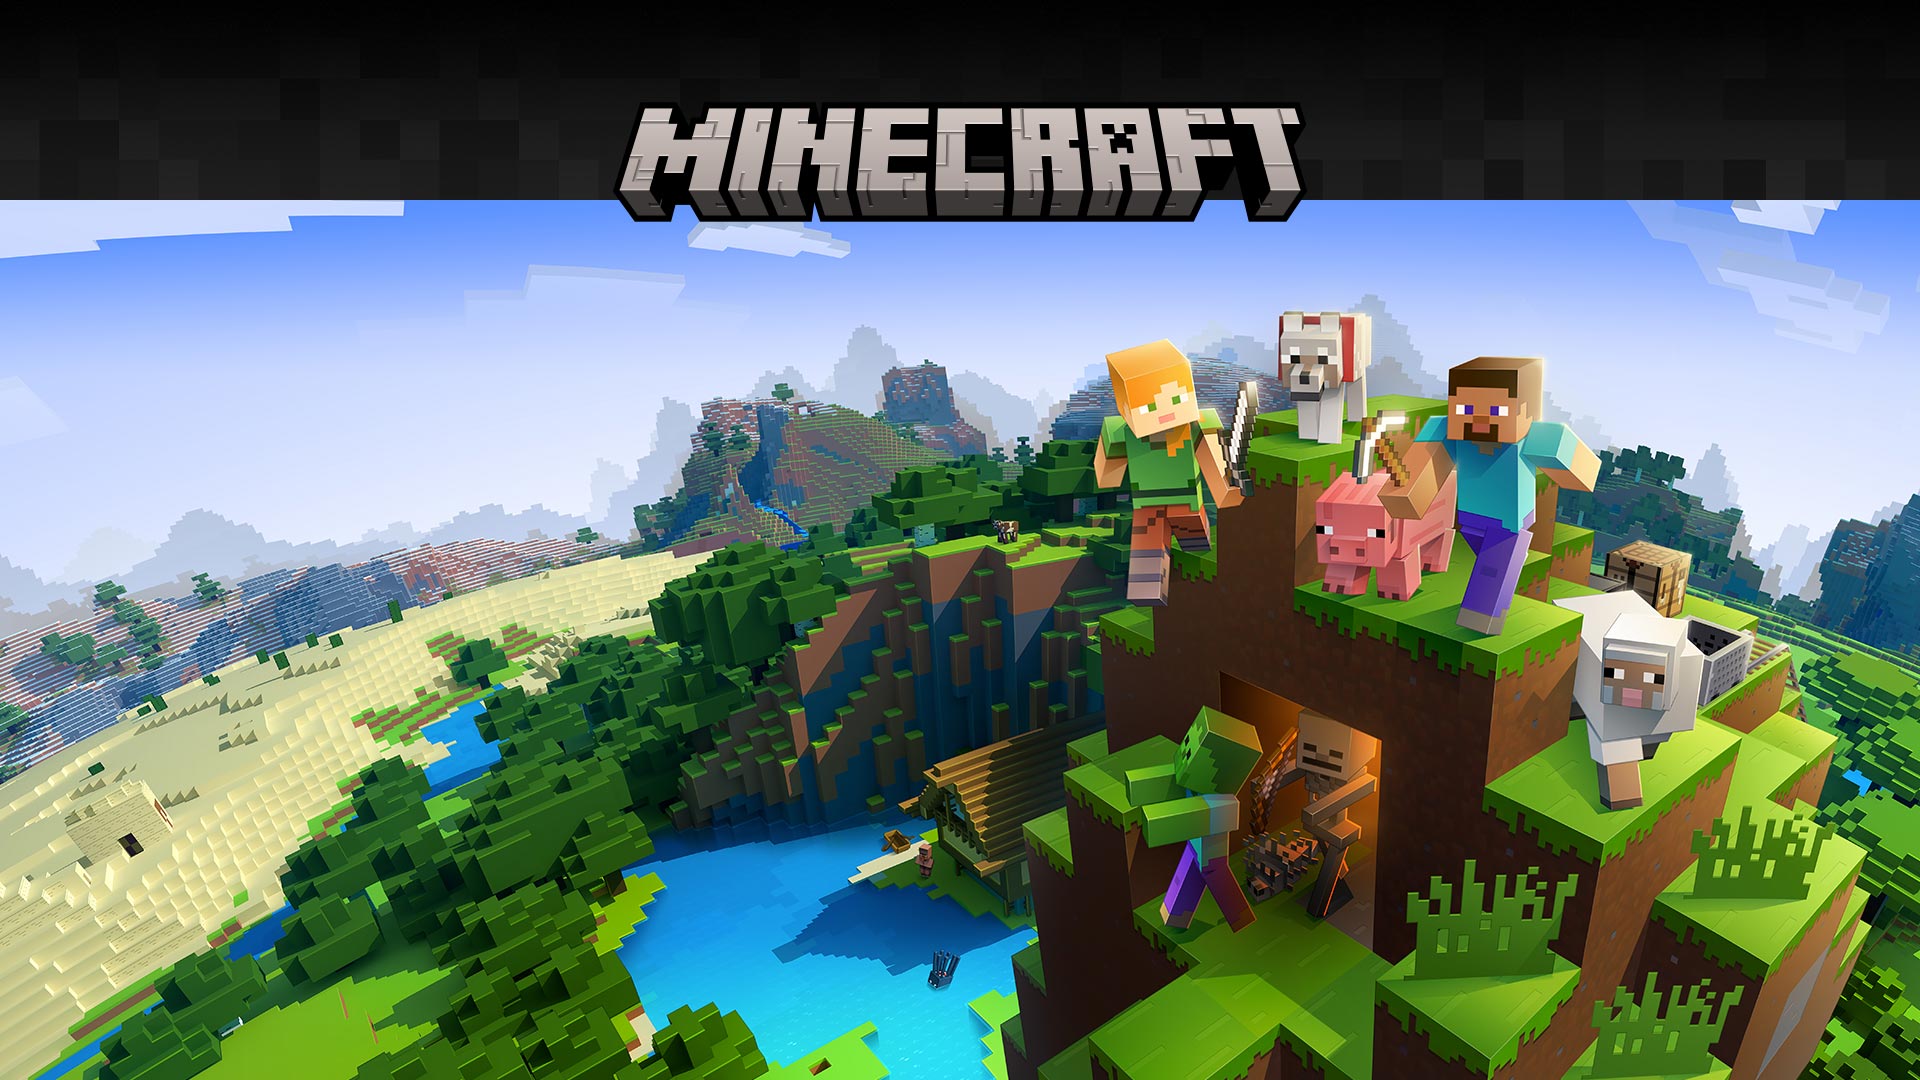 블록 환경 배경에서 게임 캐릭터와 함께 표현된 Minecraft 로고